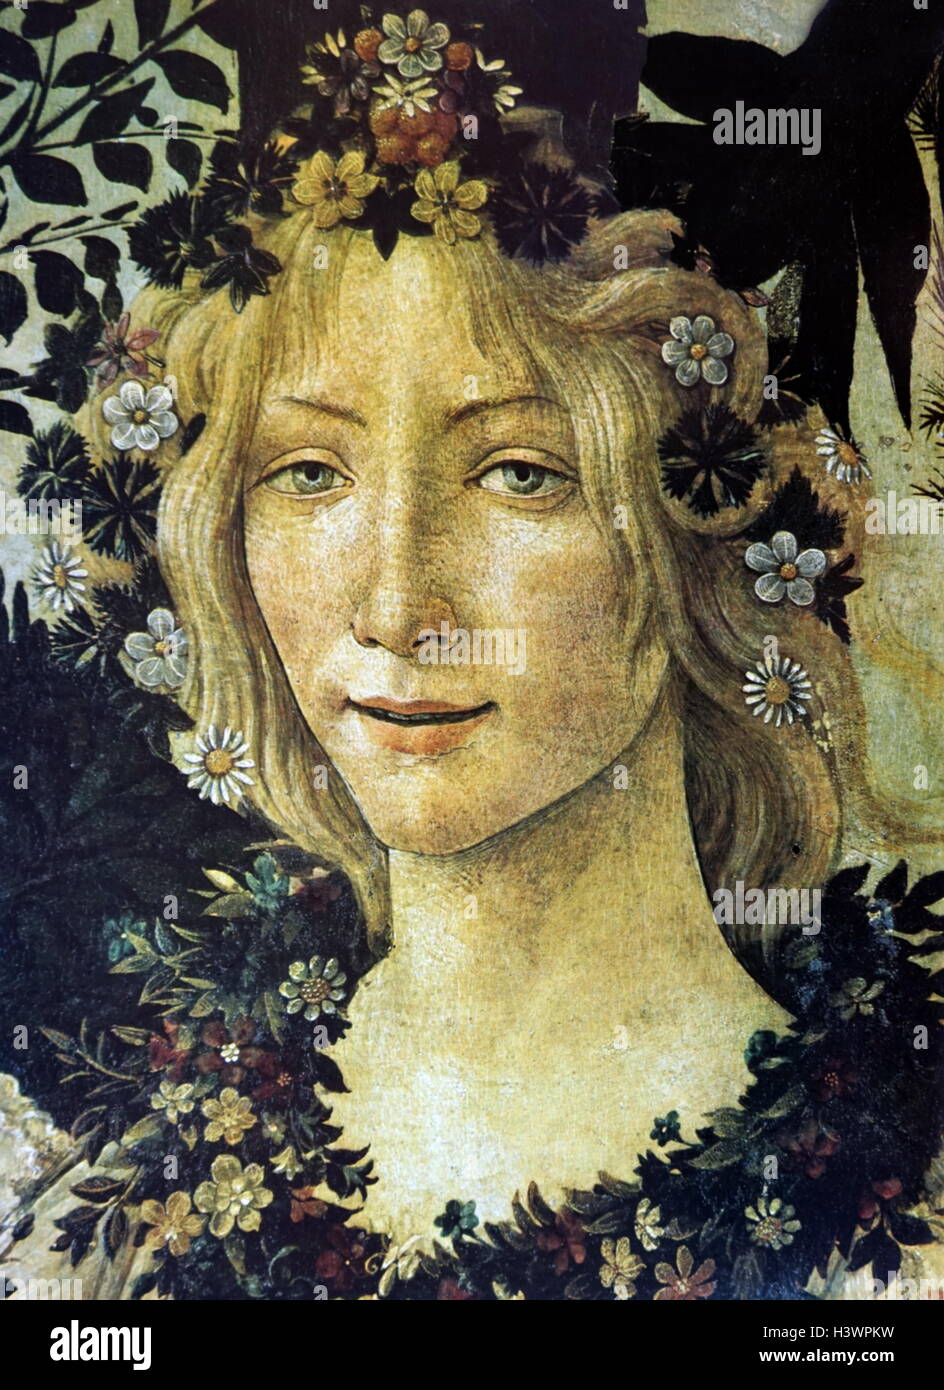 Detalle de la pintura "Primavera" representa a la diosa Flora por Sandro  Botticelli (1445-1510), pintor italiano de principios del Renacimiento.  Fecha del siglo XV Fotografía de stock - Alamy